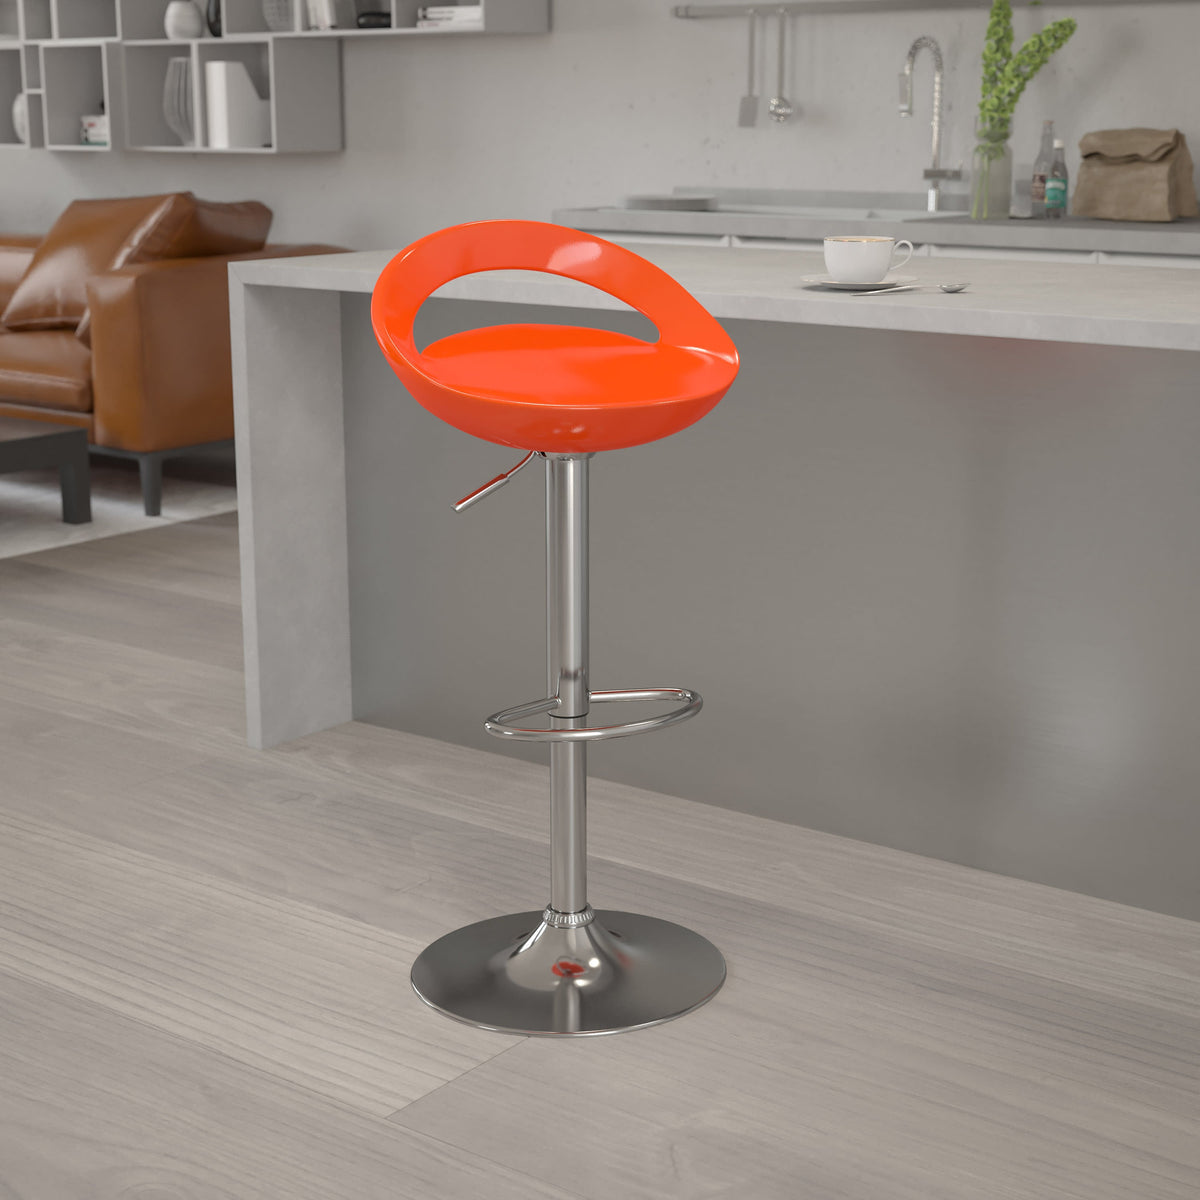 Orange |#| Orange Plastic Adjustable Height Barstool w/ Rounded Cutout Back & Chrome Base